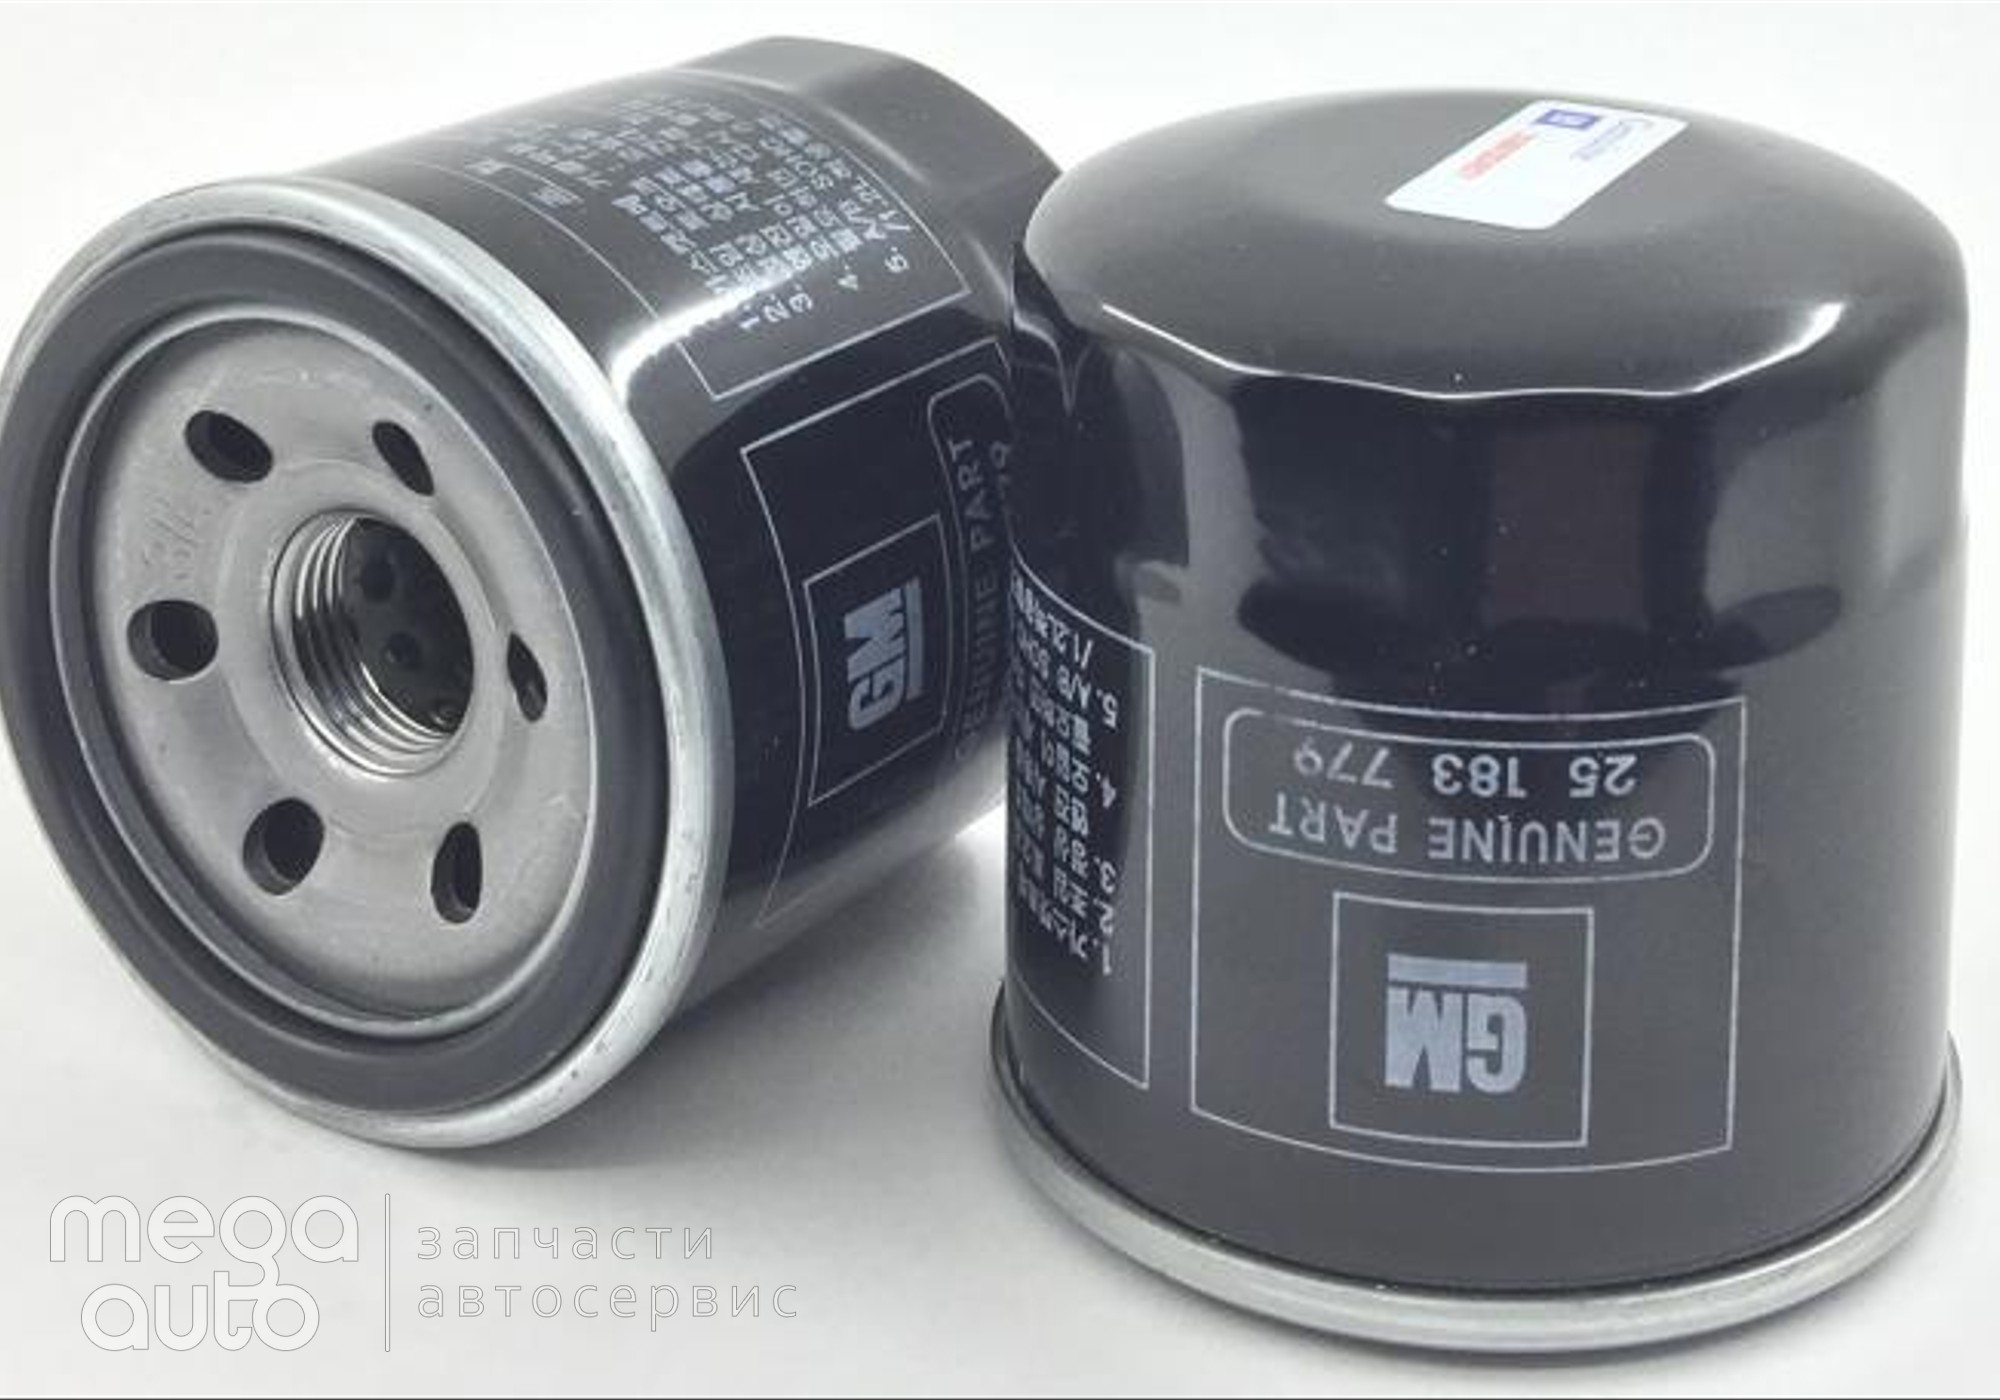 25183779 Масляный фильтр шевроле, део, сузуки(GM) для Rover 600